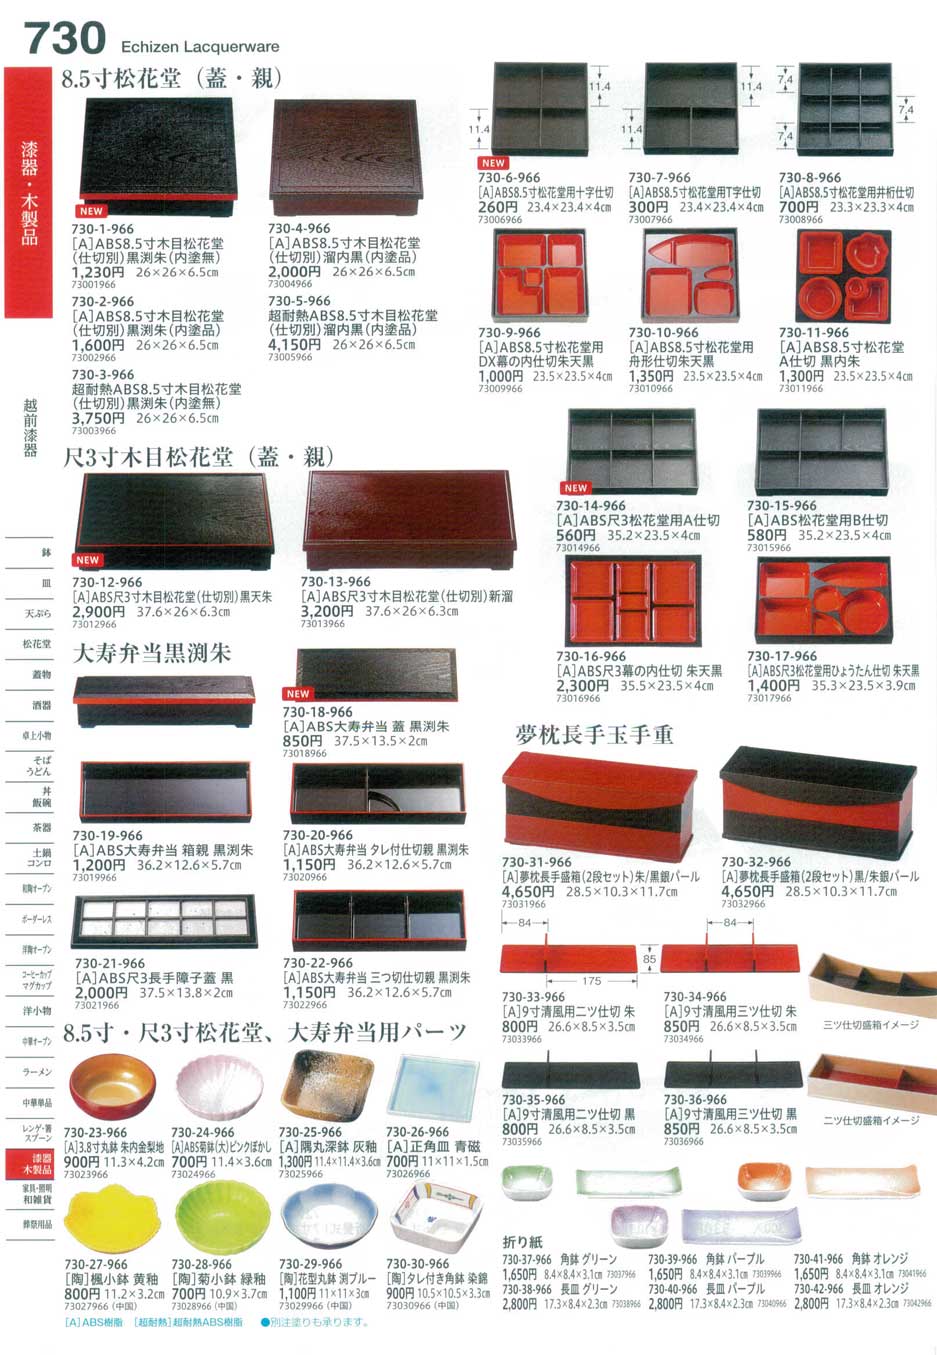 食器 越前漆器・松花堂Echizen Lacquerware, Shokado Bento Box, Plate for Bento Box  うつわ１６－730ページ